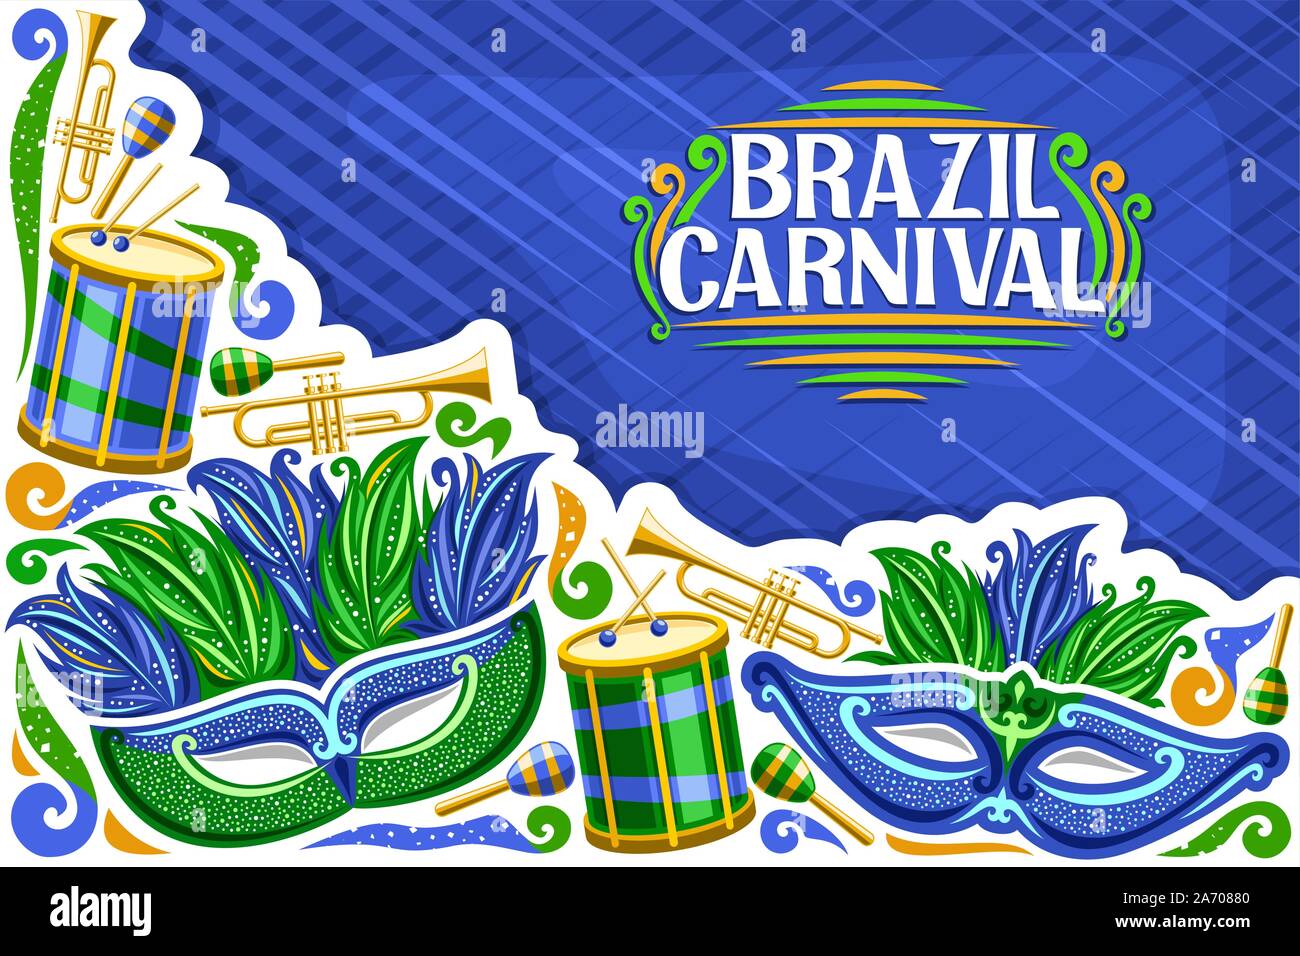 Vektor Grußkarte für Brasilien Karneval mit Kopie Raum, Abbildung der grünen Maske, Schlagzeug mit Trommelstöcken, Vorlage für Karneval in Rio de Janeiro, Stock Vektor